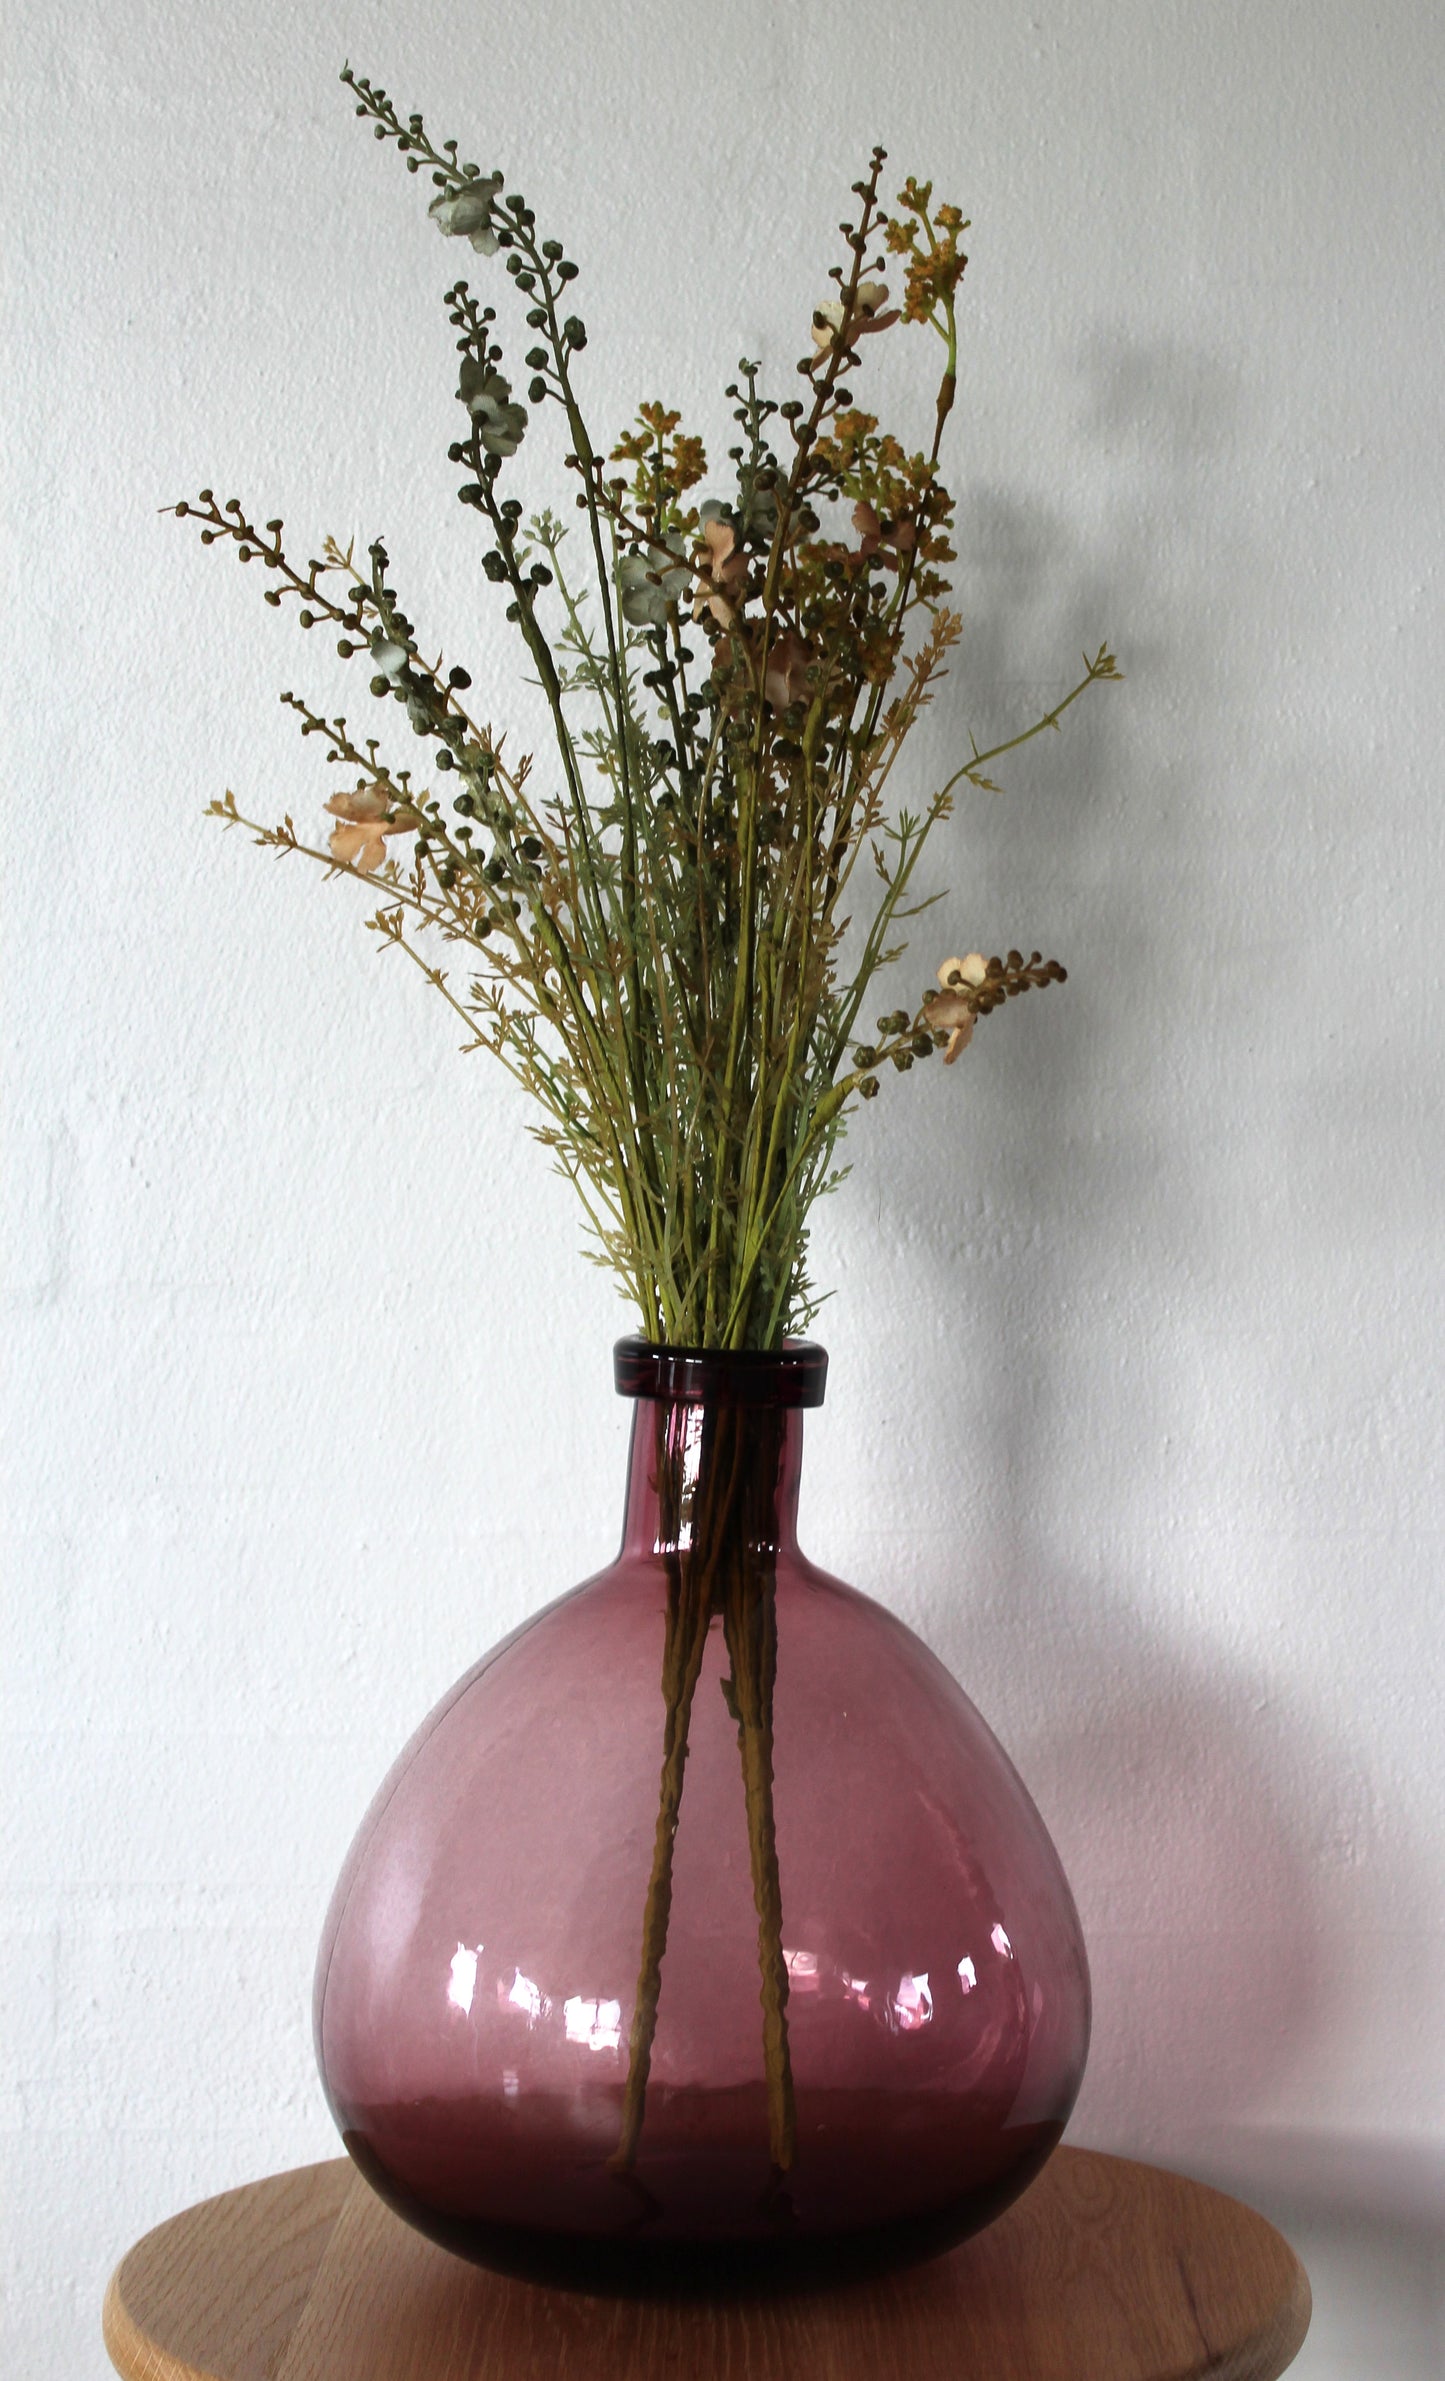 Ib laursen - Glasballon i malva farvet glas H 27 cm inkl. 3 stilke ass. kunstige blomster